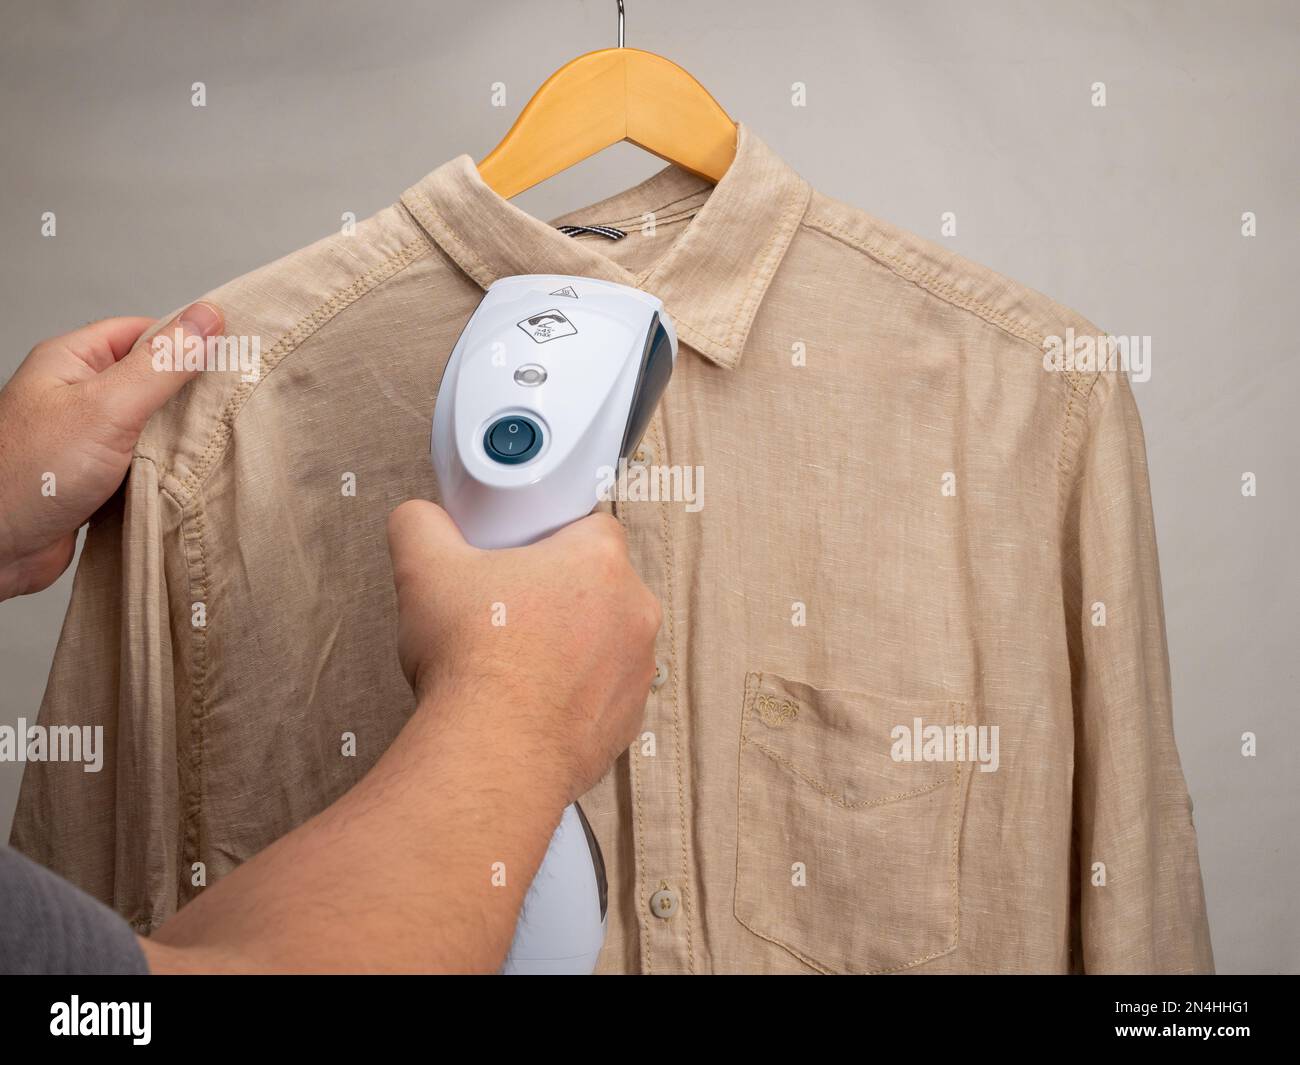 Handdampfer für Kleidung. Ein Hemd wird mit einem tragbaren Bügeleisen  gebügelt. Bügeleisen zum Bügeln von Kleidung Stockfotografie - Alamy